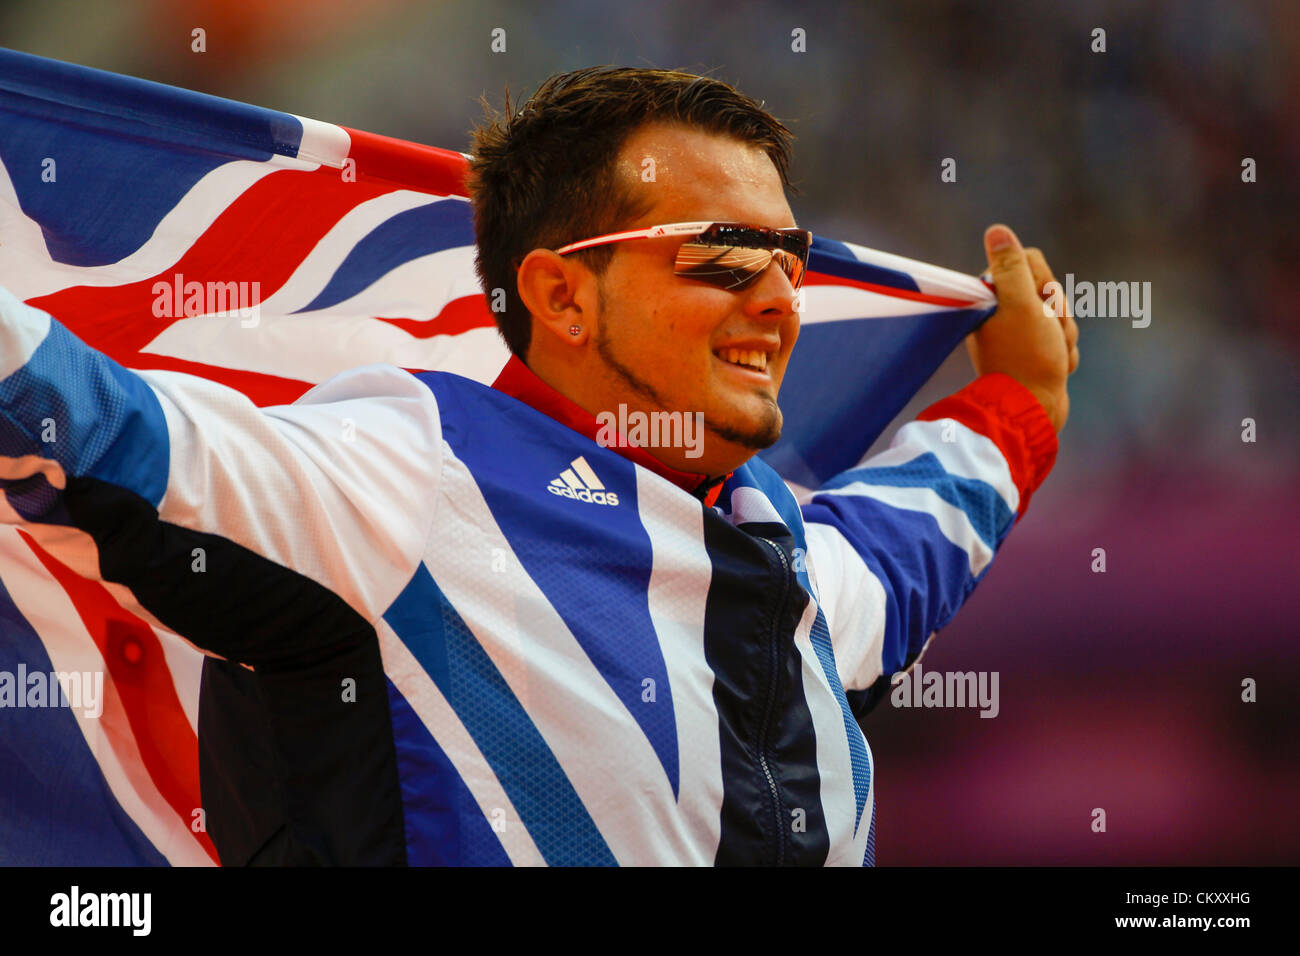 31.08.2012 London, England. Bronzemedaillengewinner feiert Aled DAVIES (GBR) nach die Männer Kugelstoßen F42/44 Finale am 2. Tag der London Paralympics vom Olympiastadion entfernt. Stockfoto